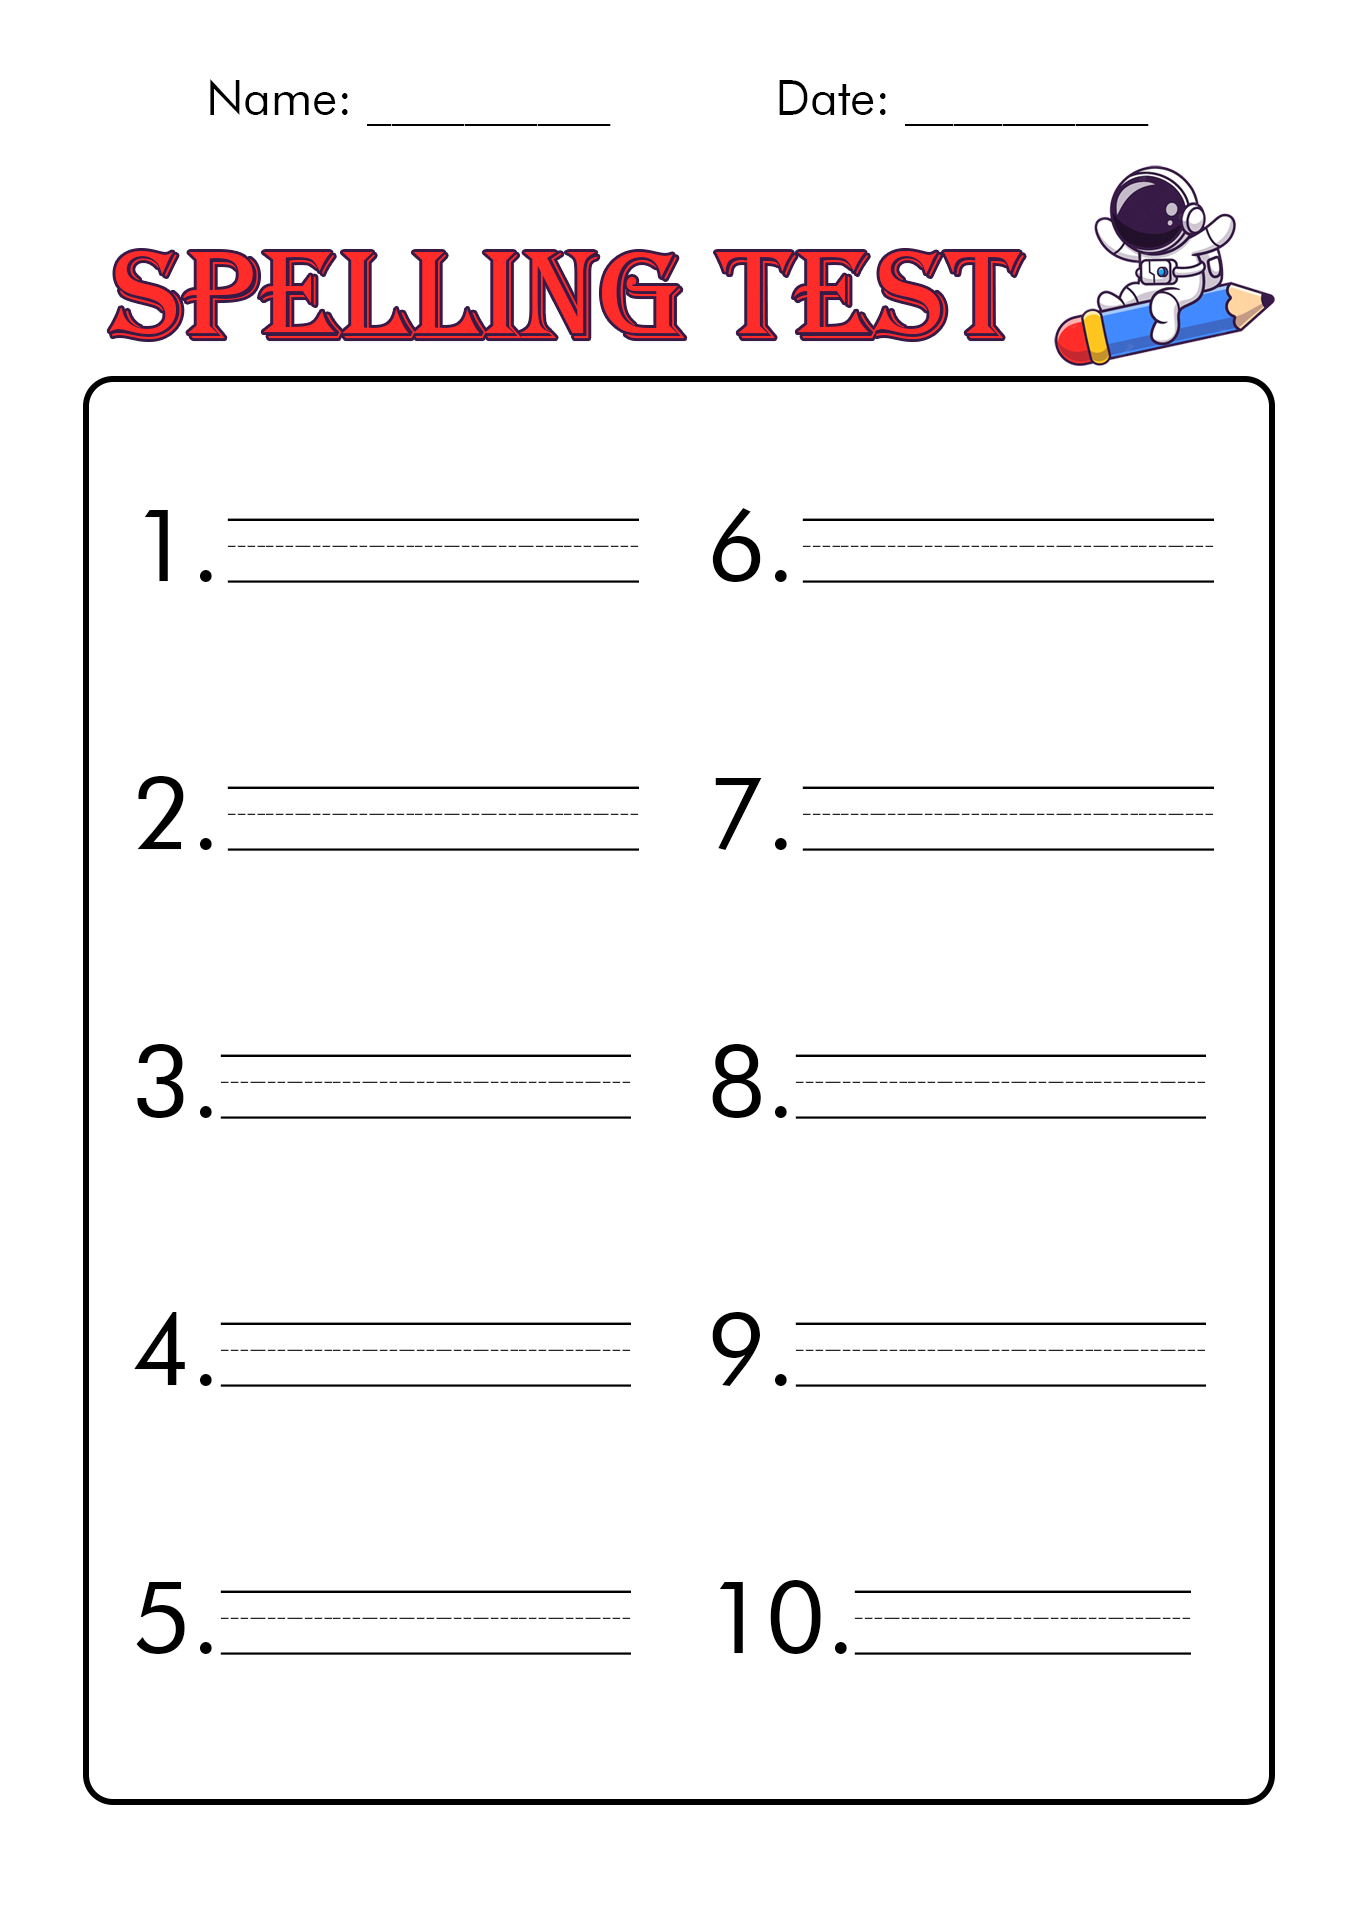 Spelling Test Worksheet Printable